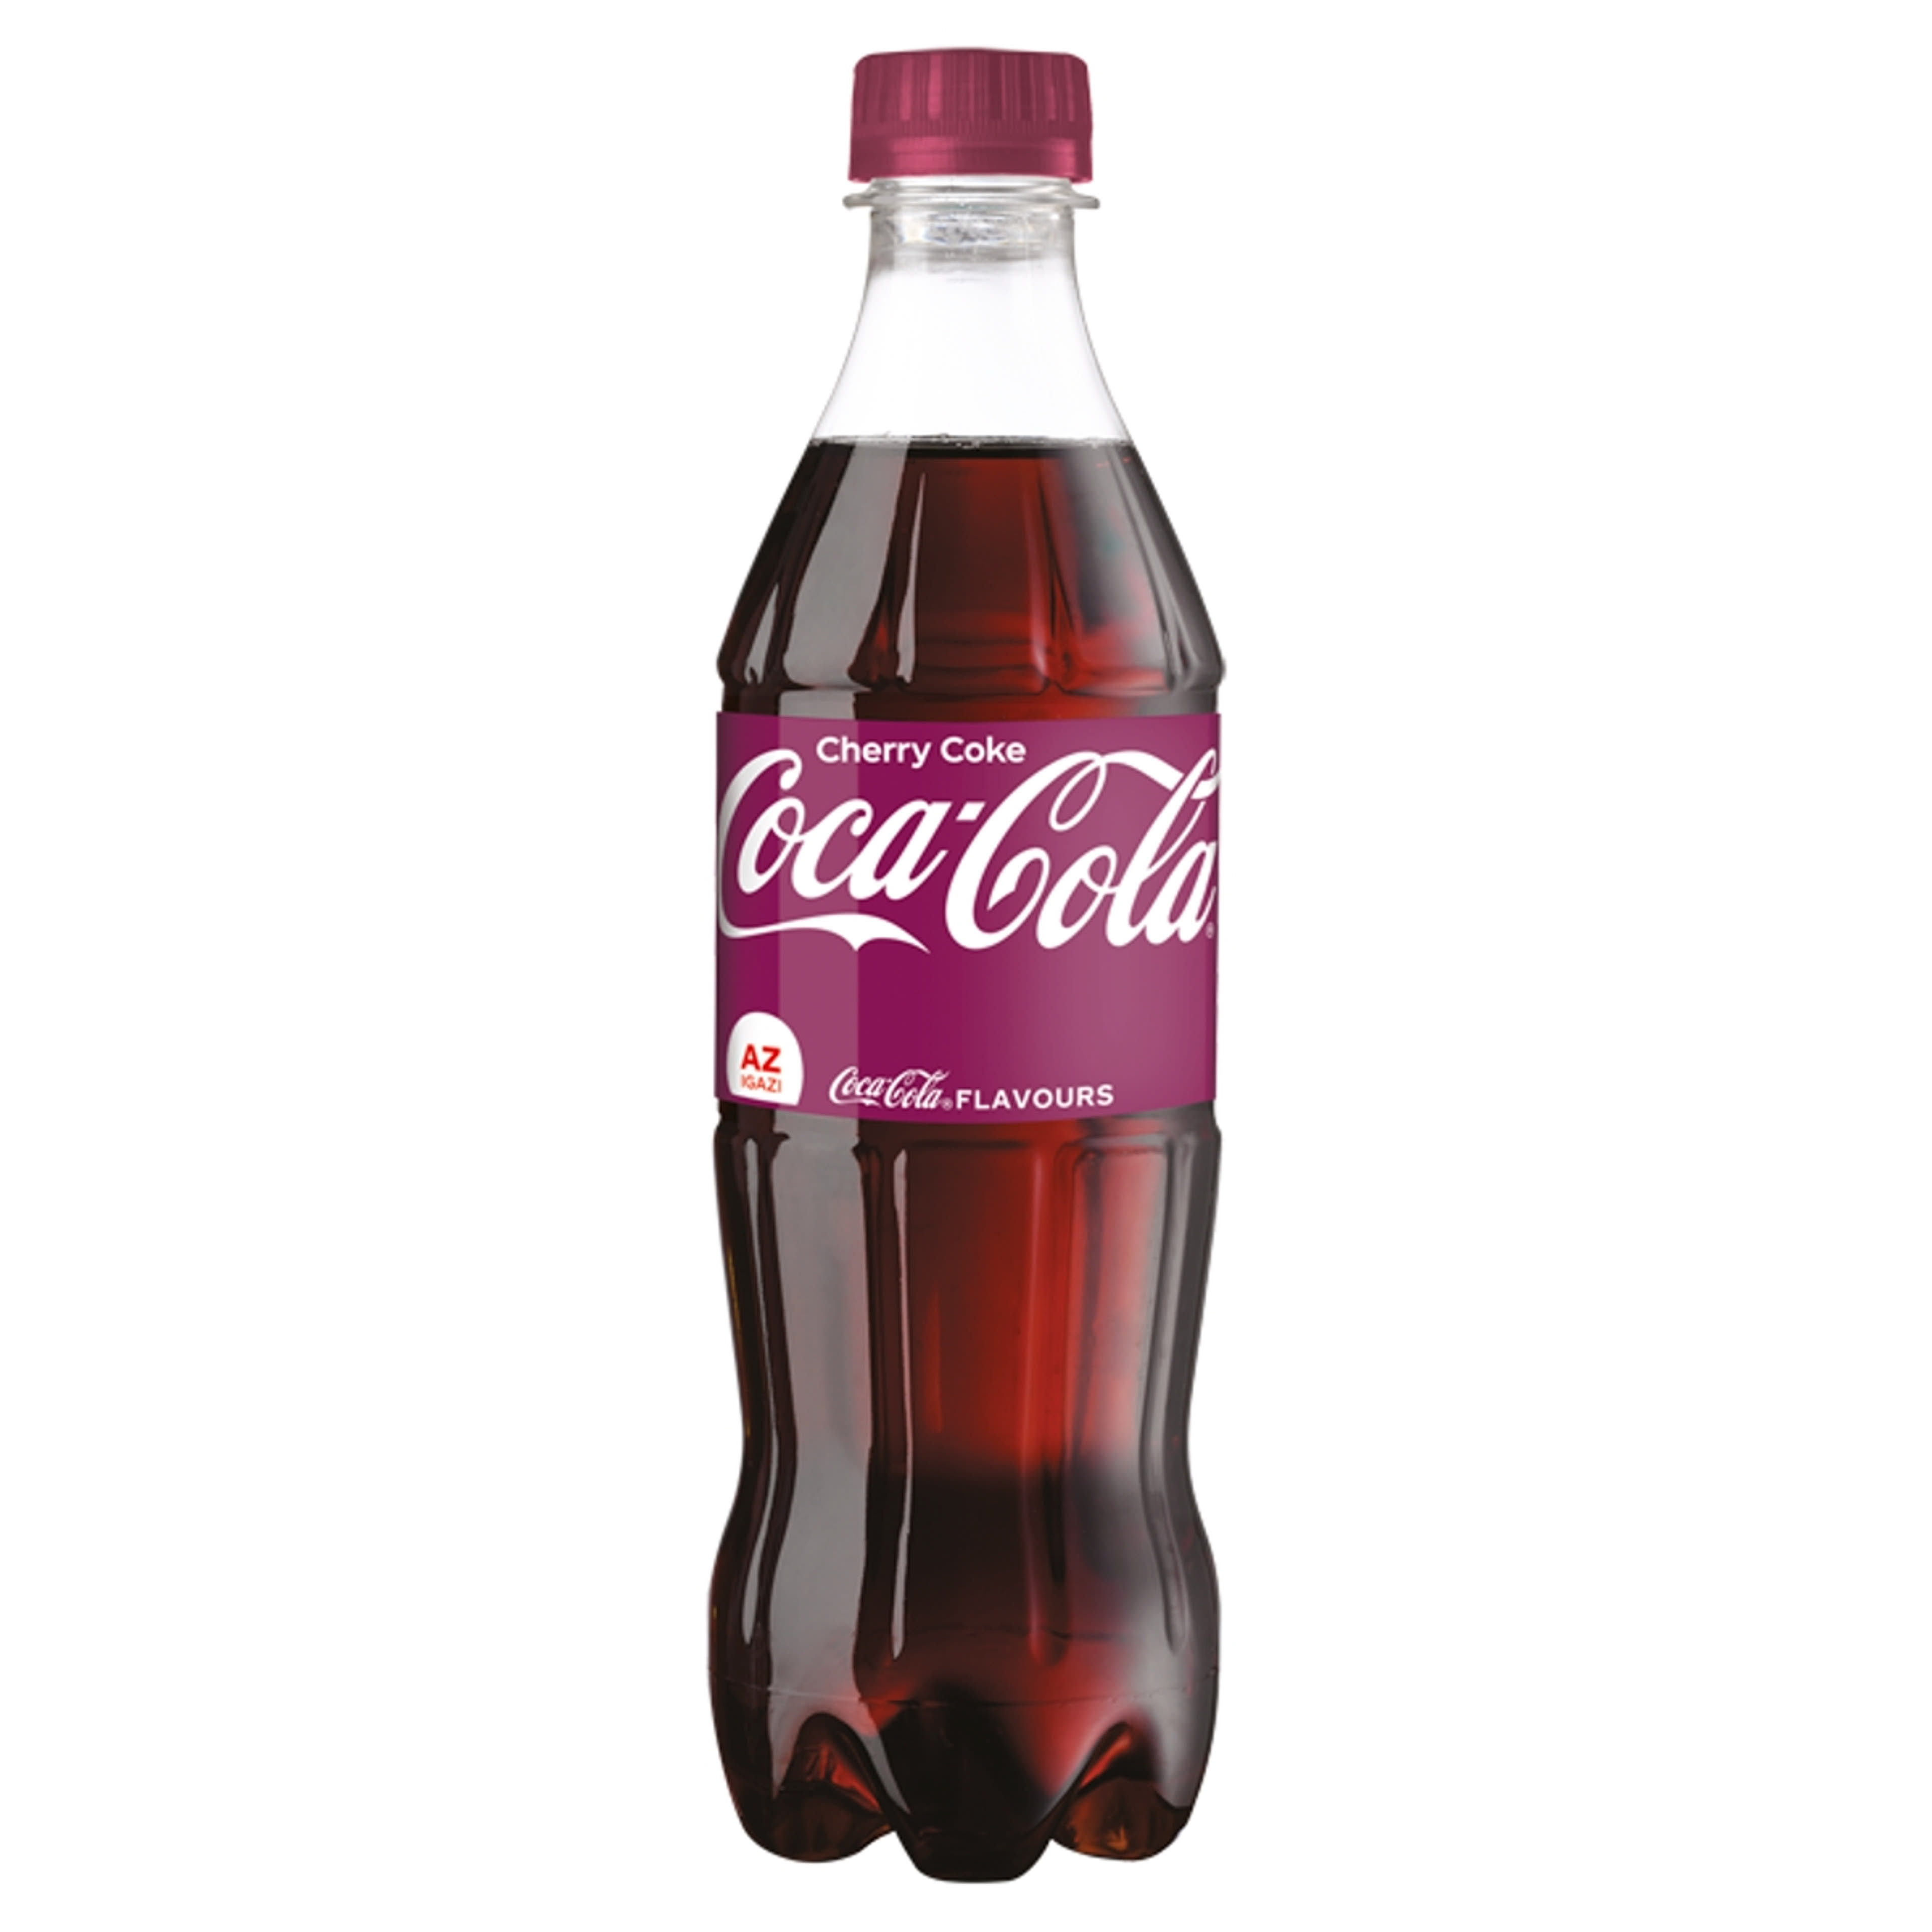 Coca Cola cherry coke - 500 ml